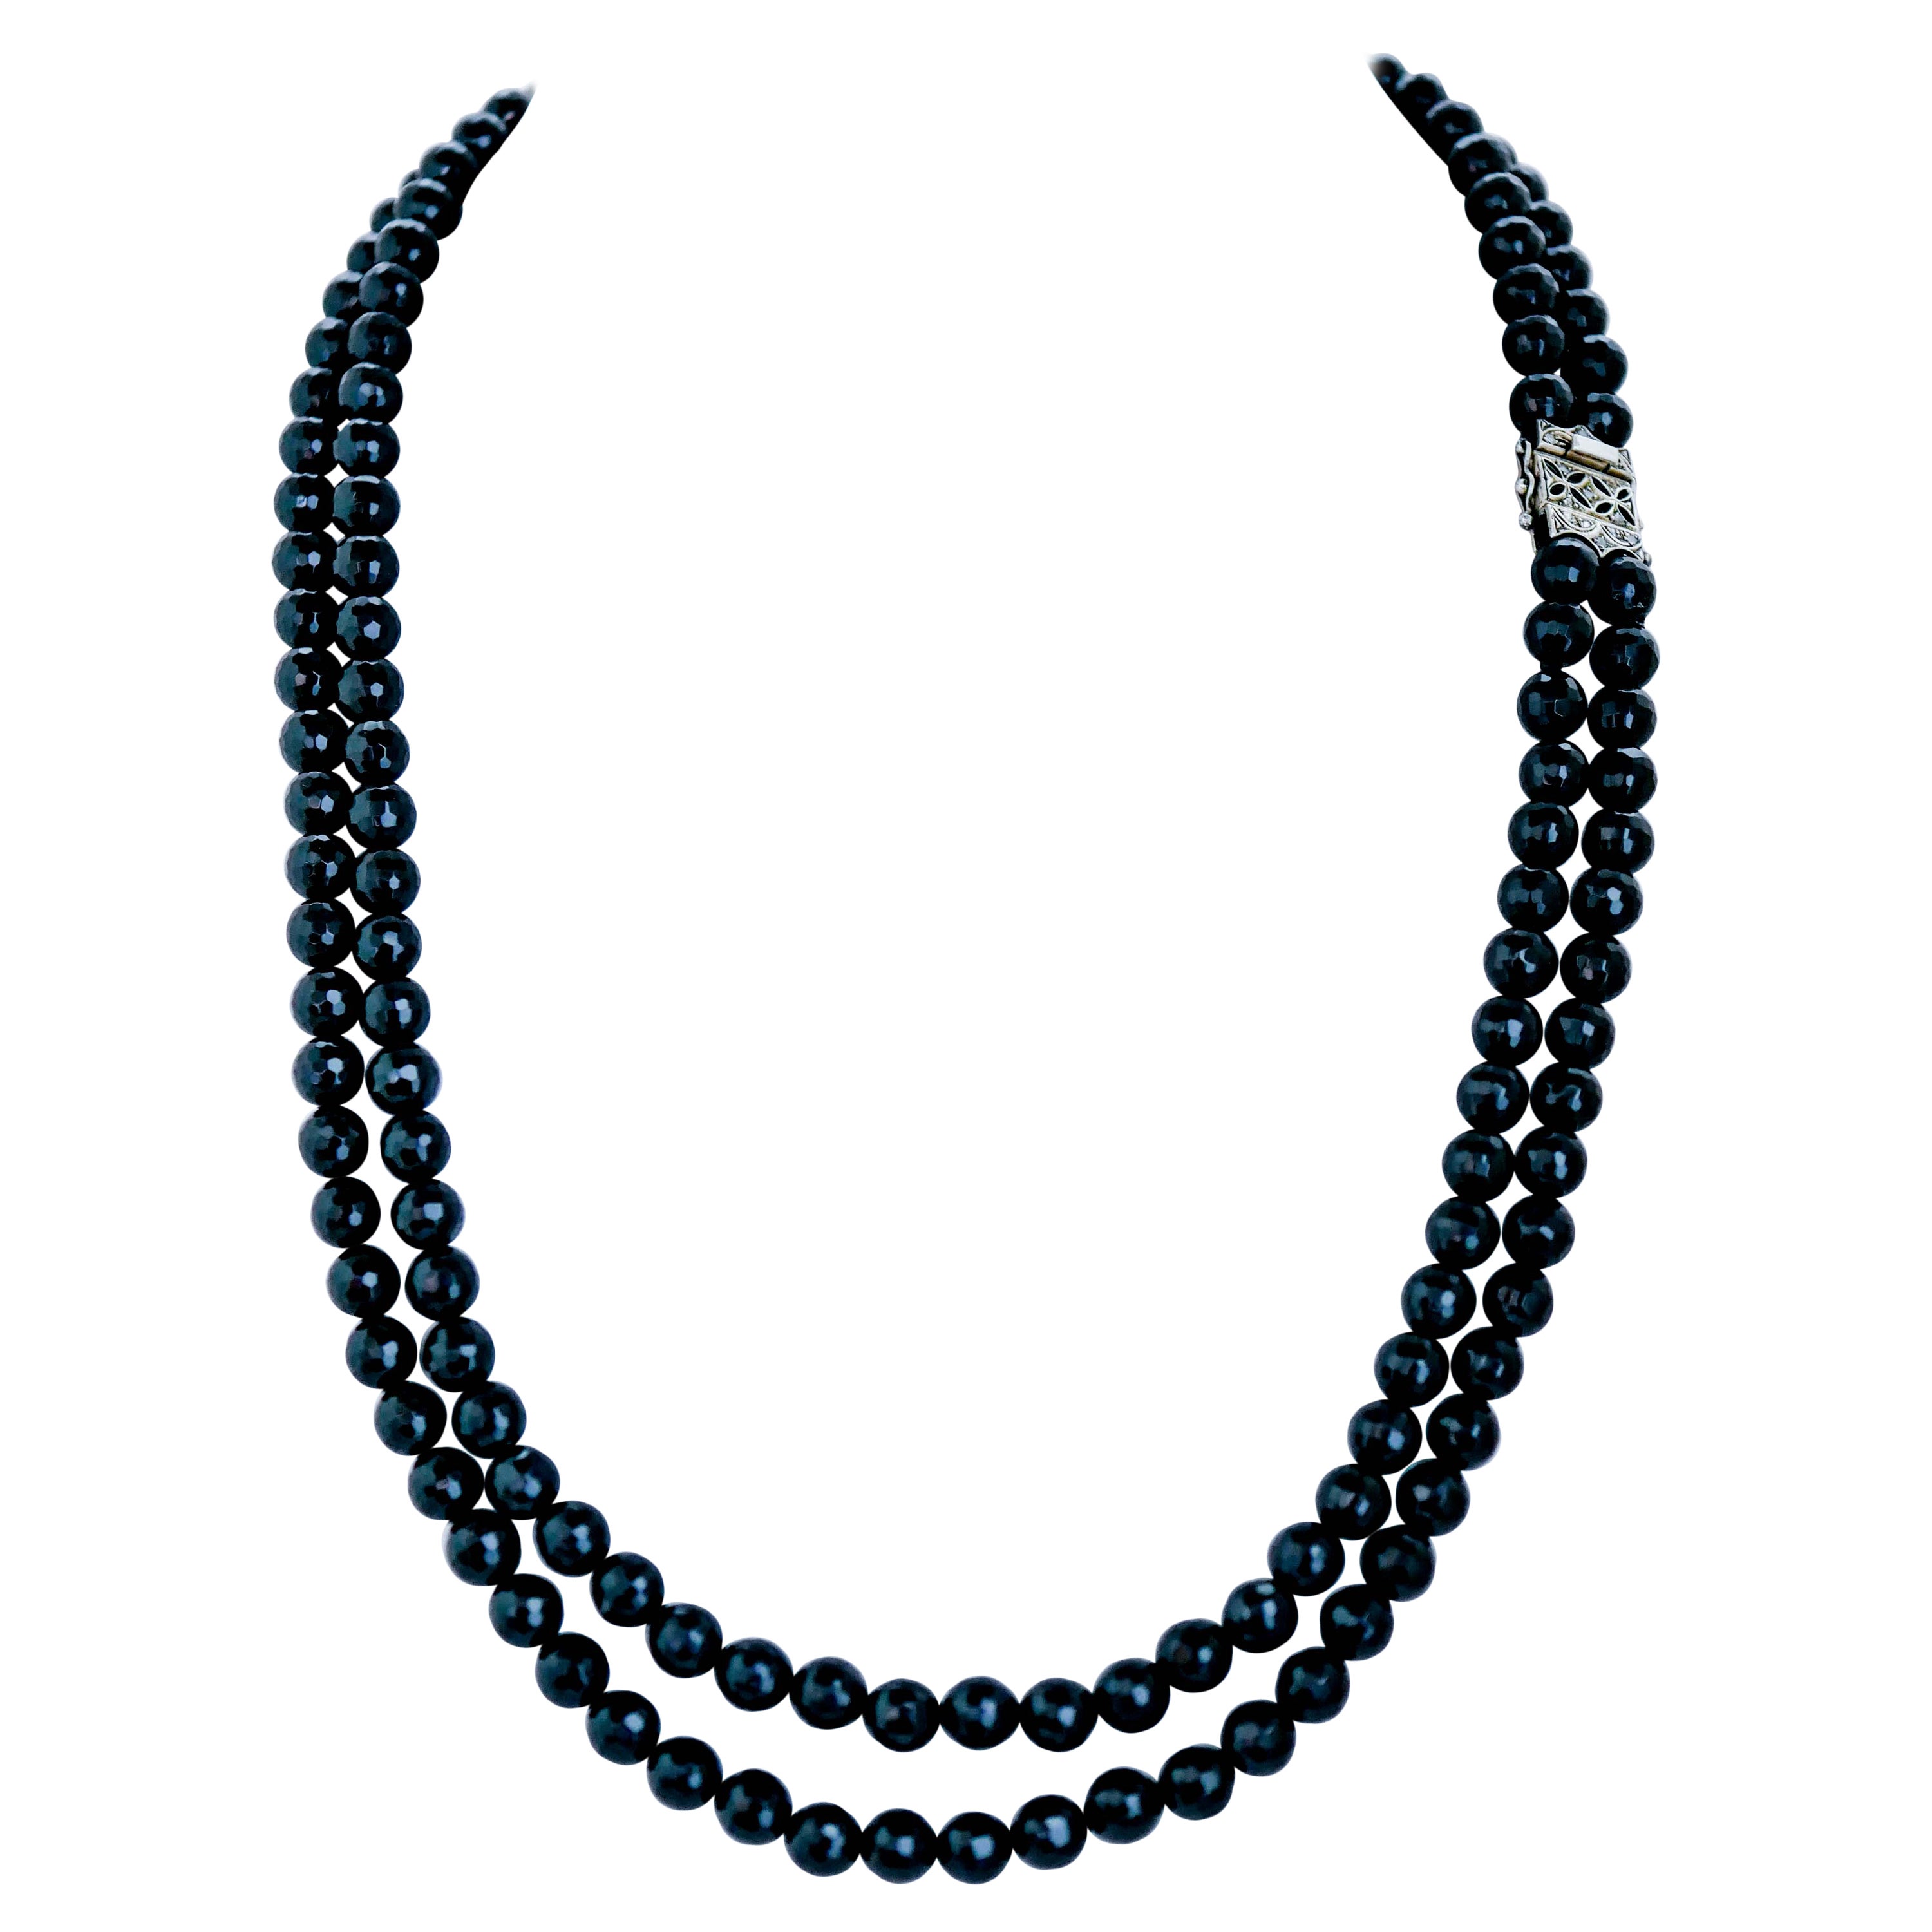 Mehrreihige Halskette aus Onyx, Diamanten, Roségold und Silber.